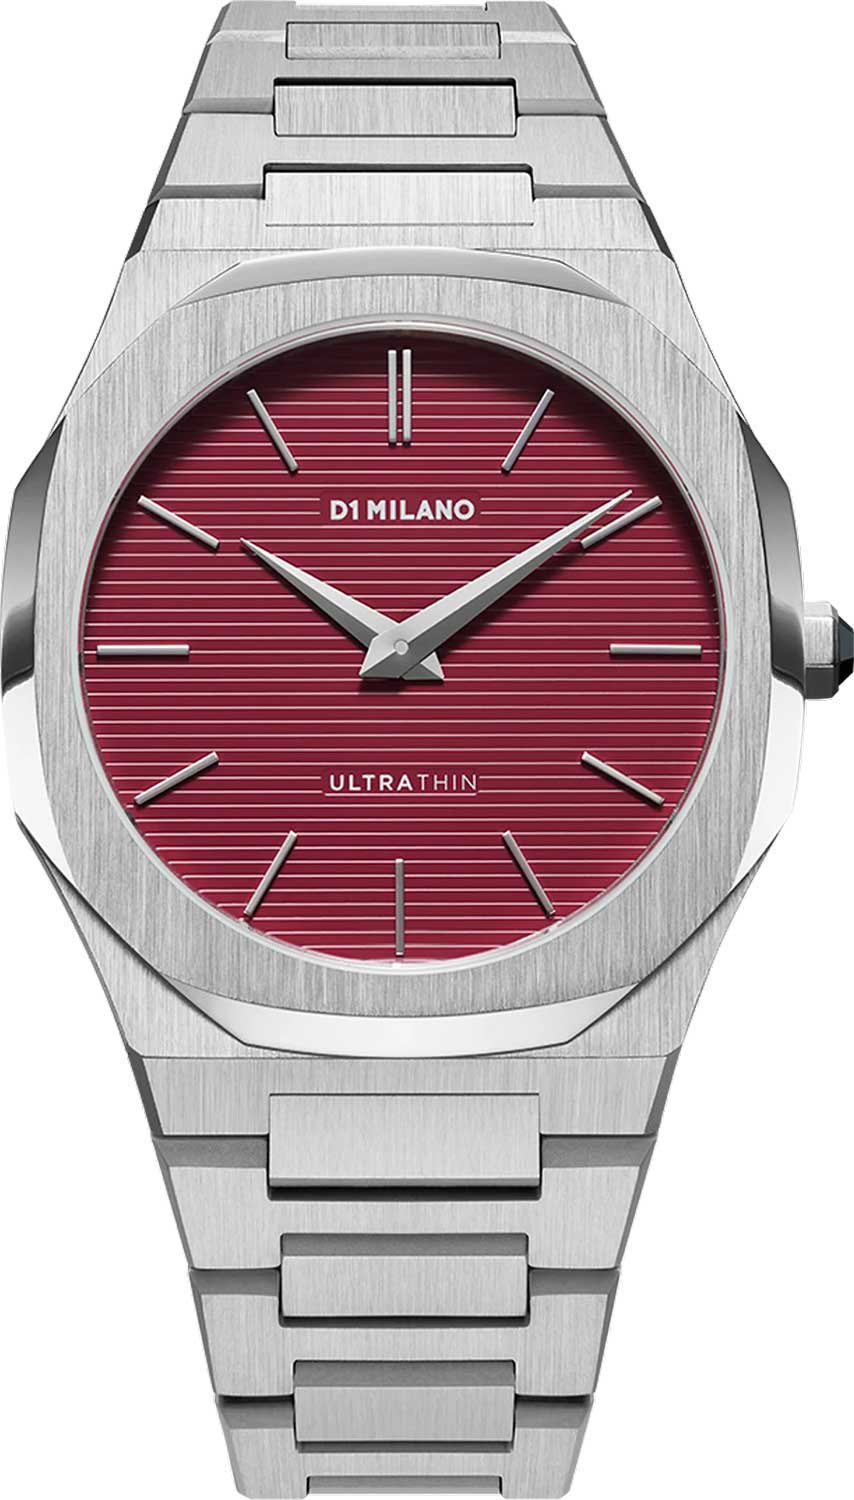 Наручные часы D1 Milano UTBJ11